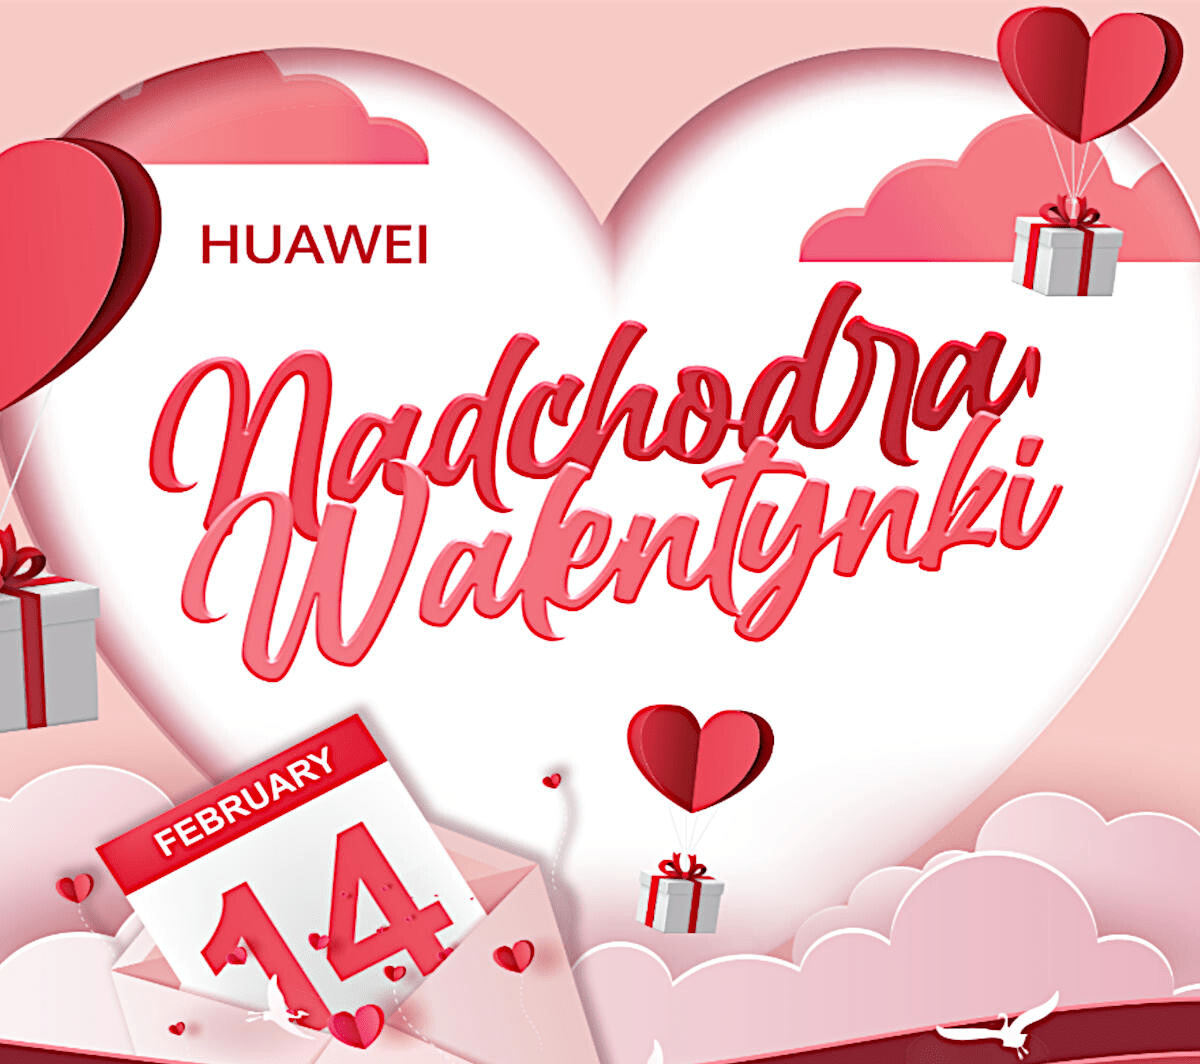 promocja
Huawei AppGallery Walentynki